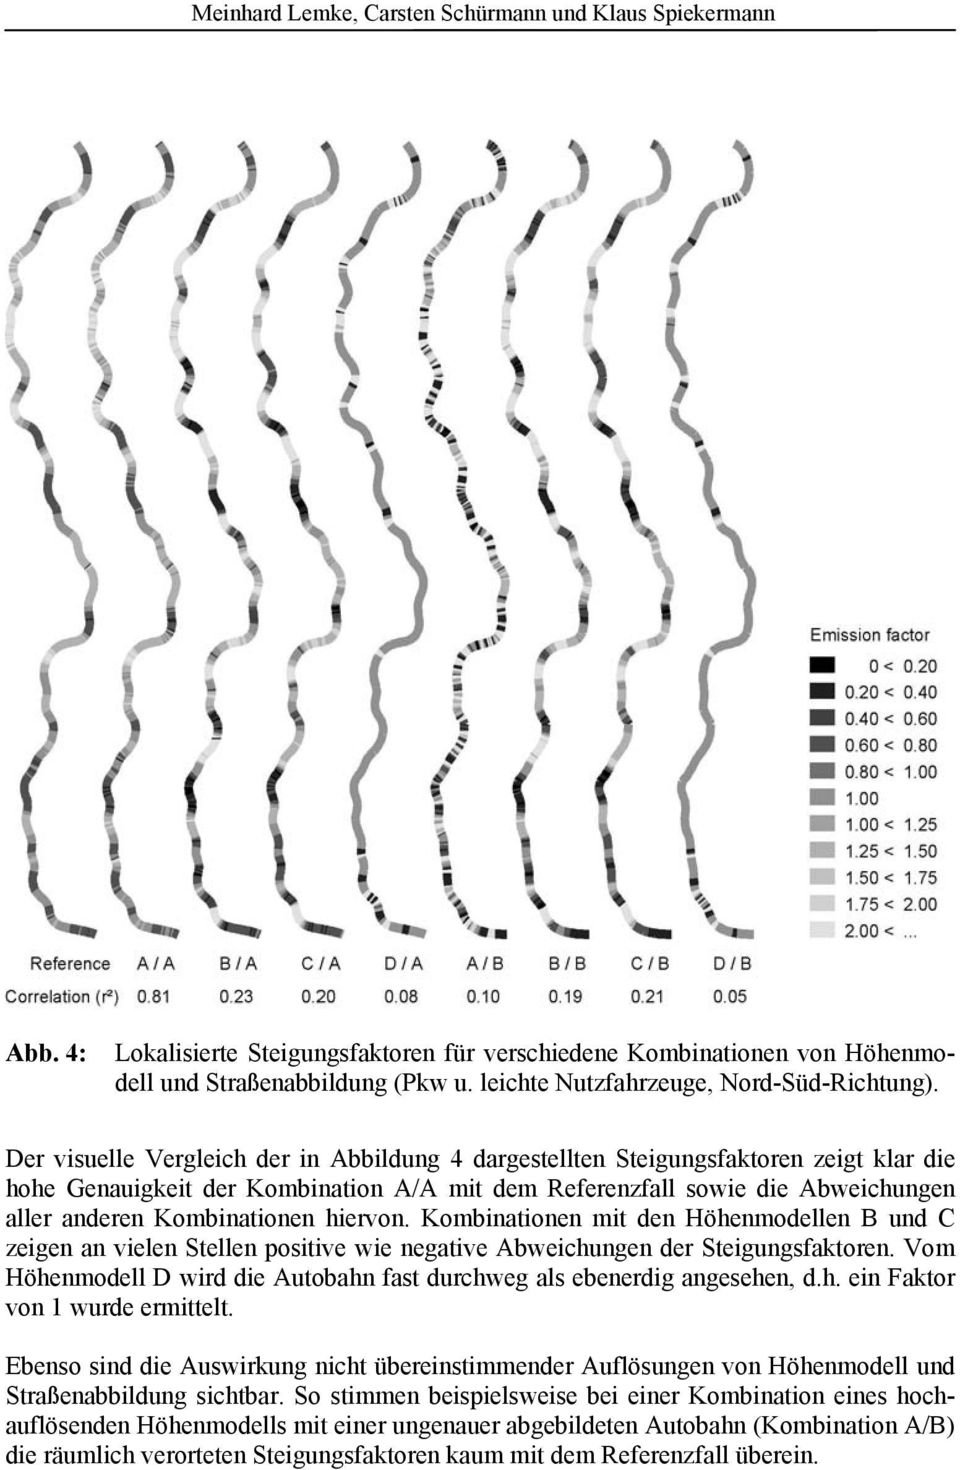 Der visuelle Vergleich der in Abbildung 4 dargestellten Steigungsfaktoren zeigt klar die hohe Genauigkeit der Kombination A/A mit dem Referenzfall sowie die Abweichungen aller anderen Kombinationen